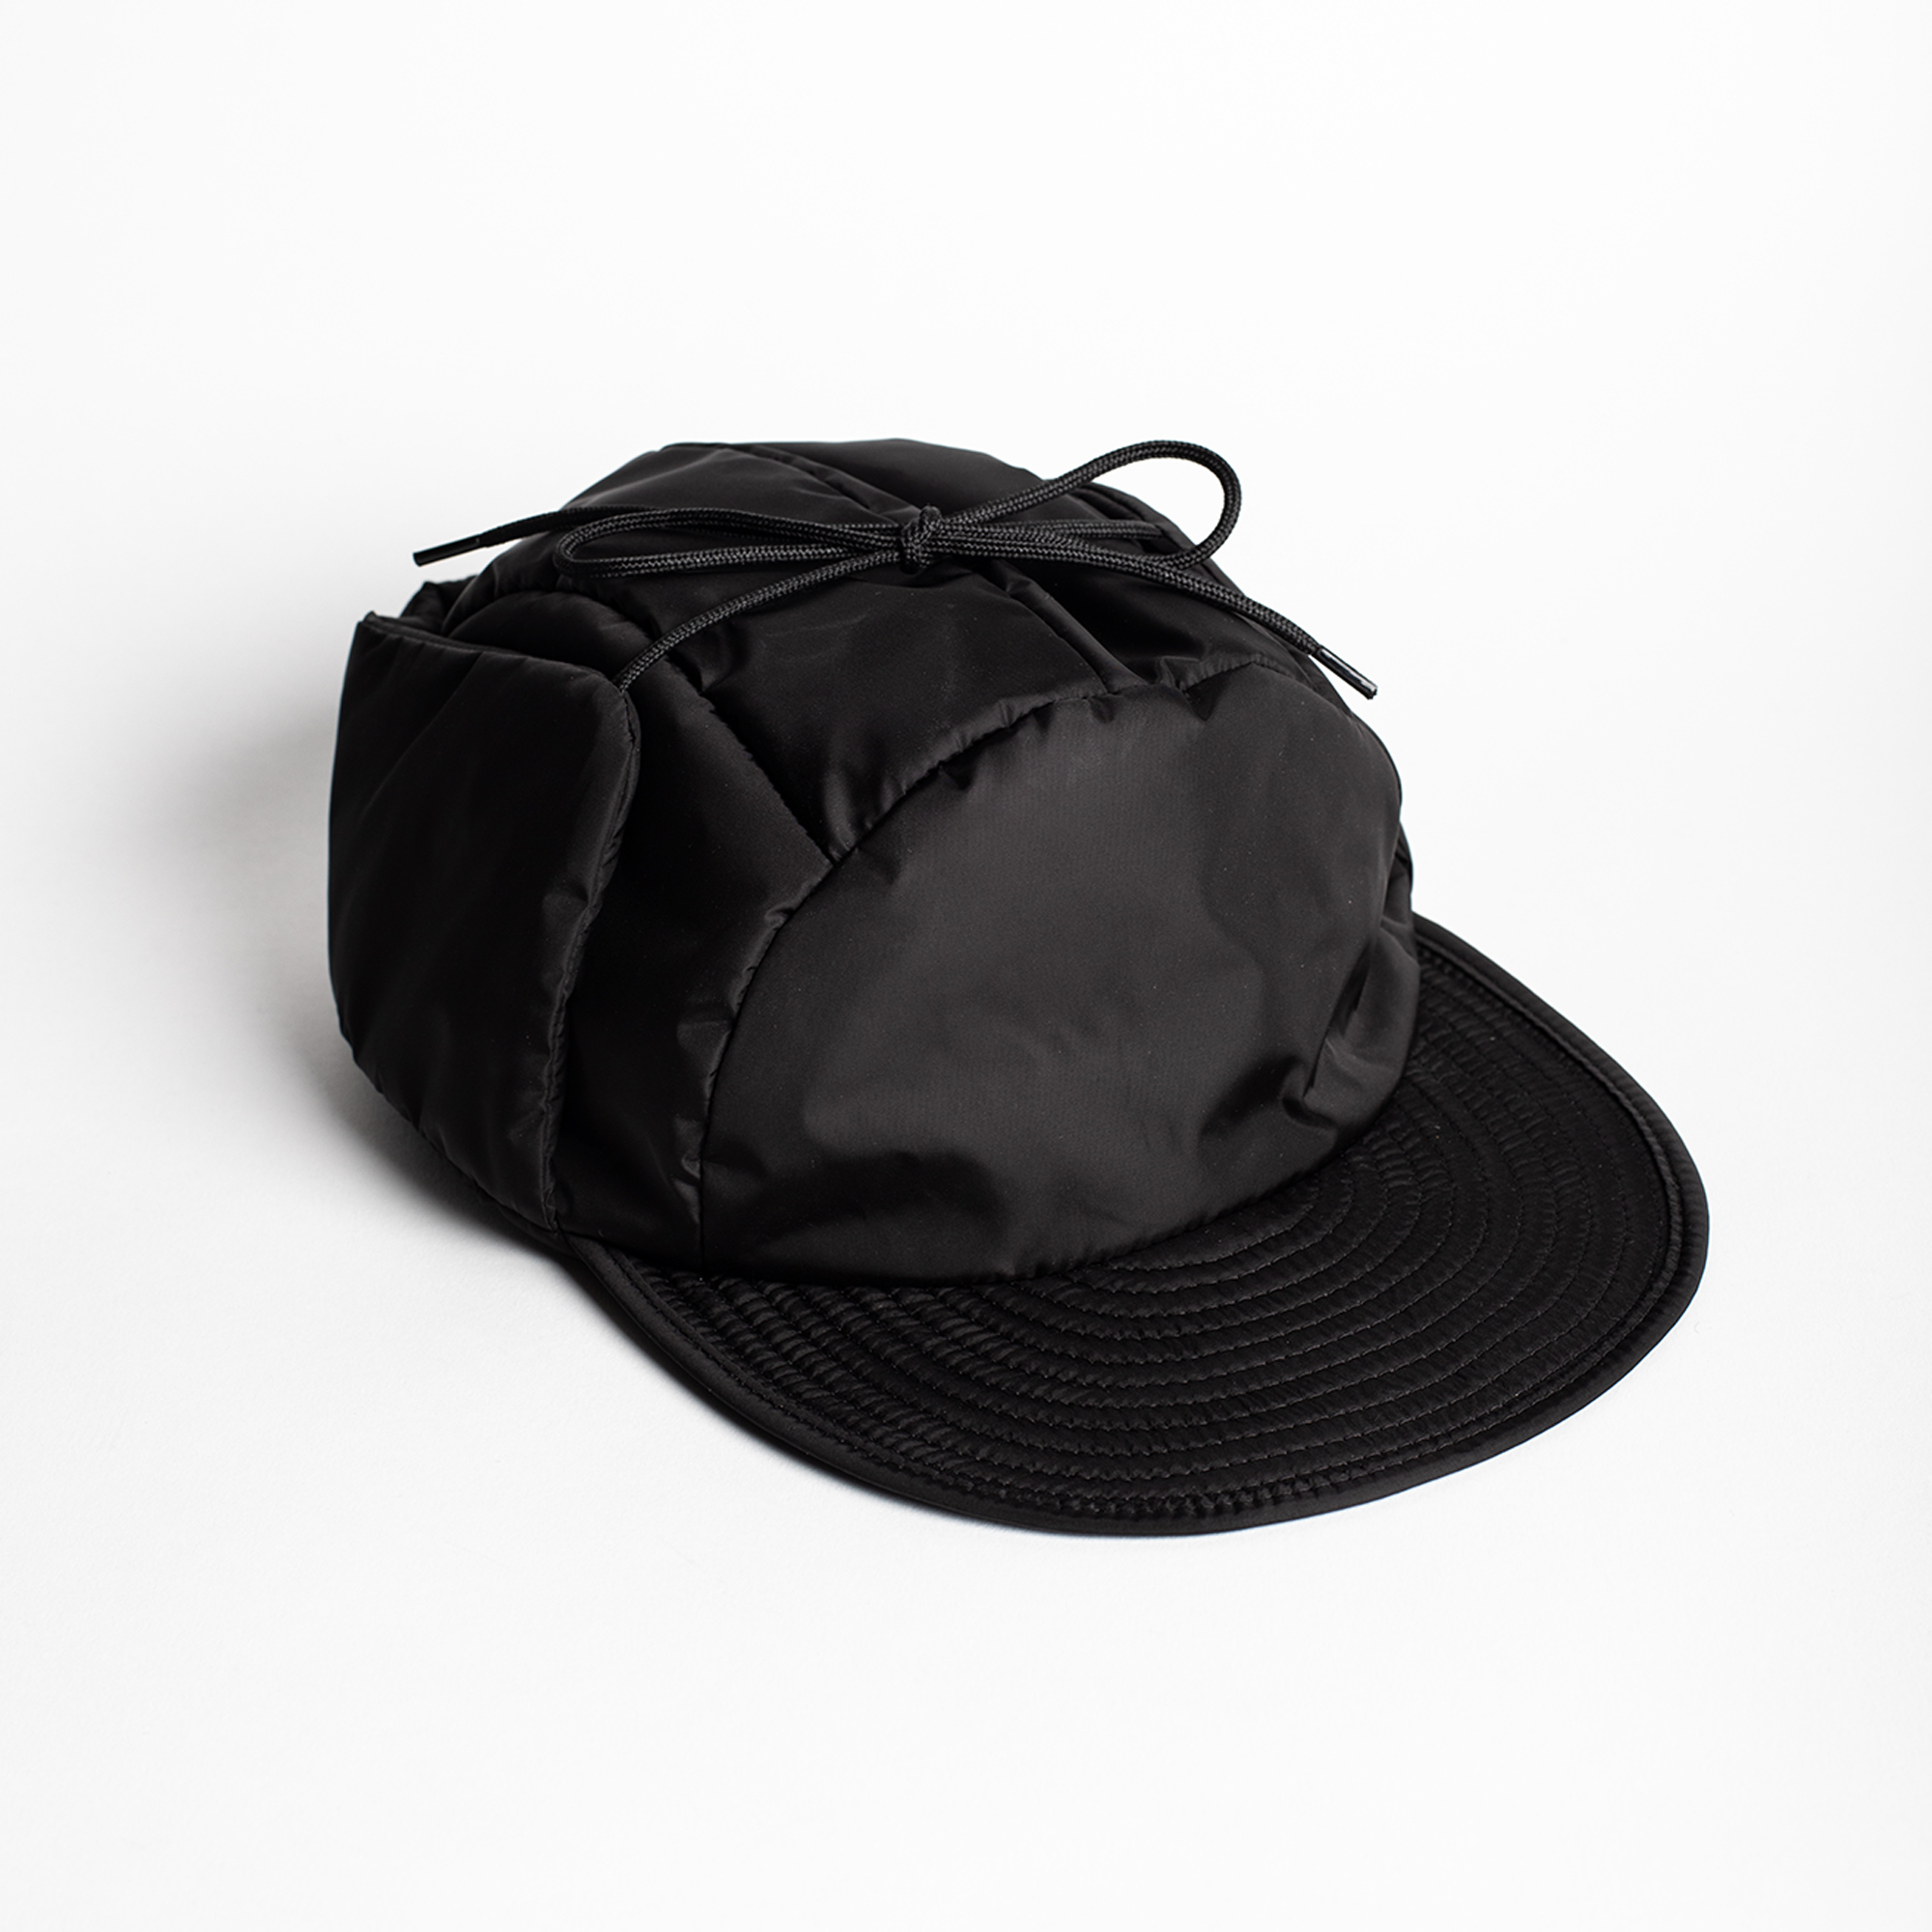 LOFT Cap in Black color by Arpenteur